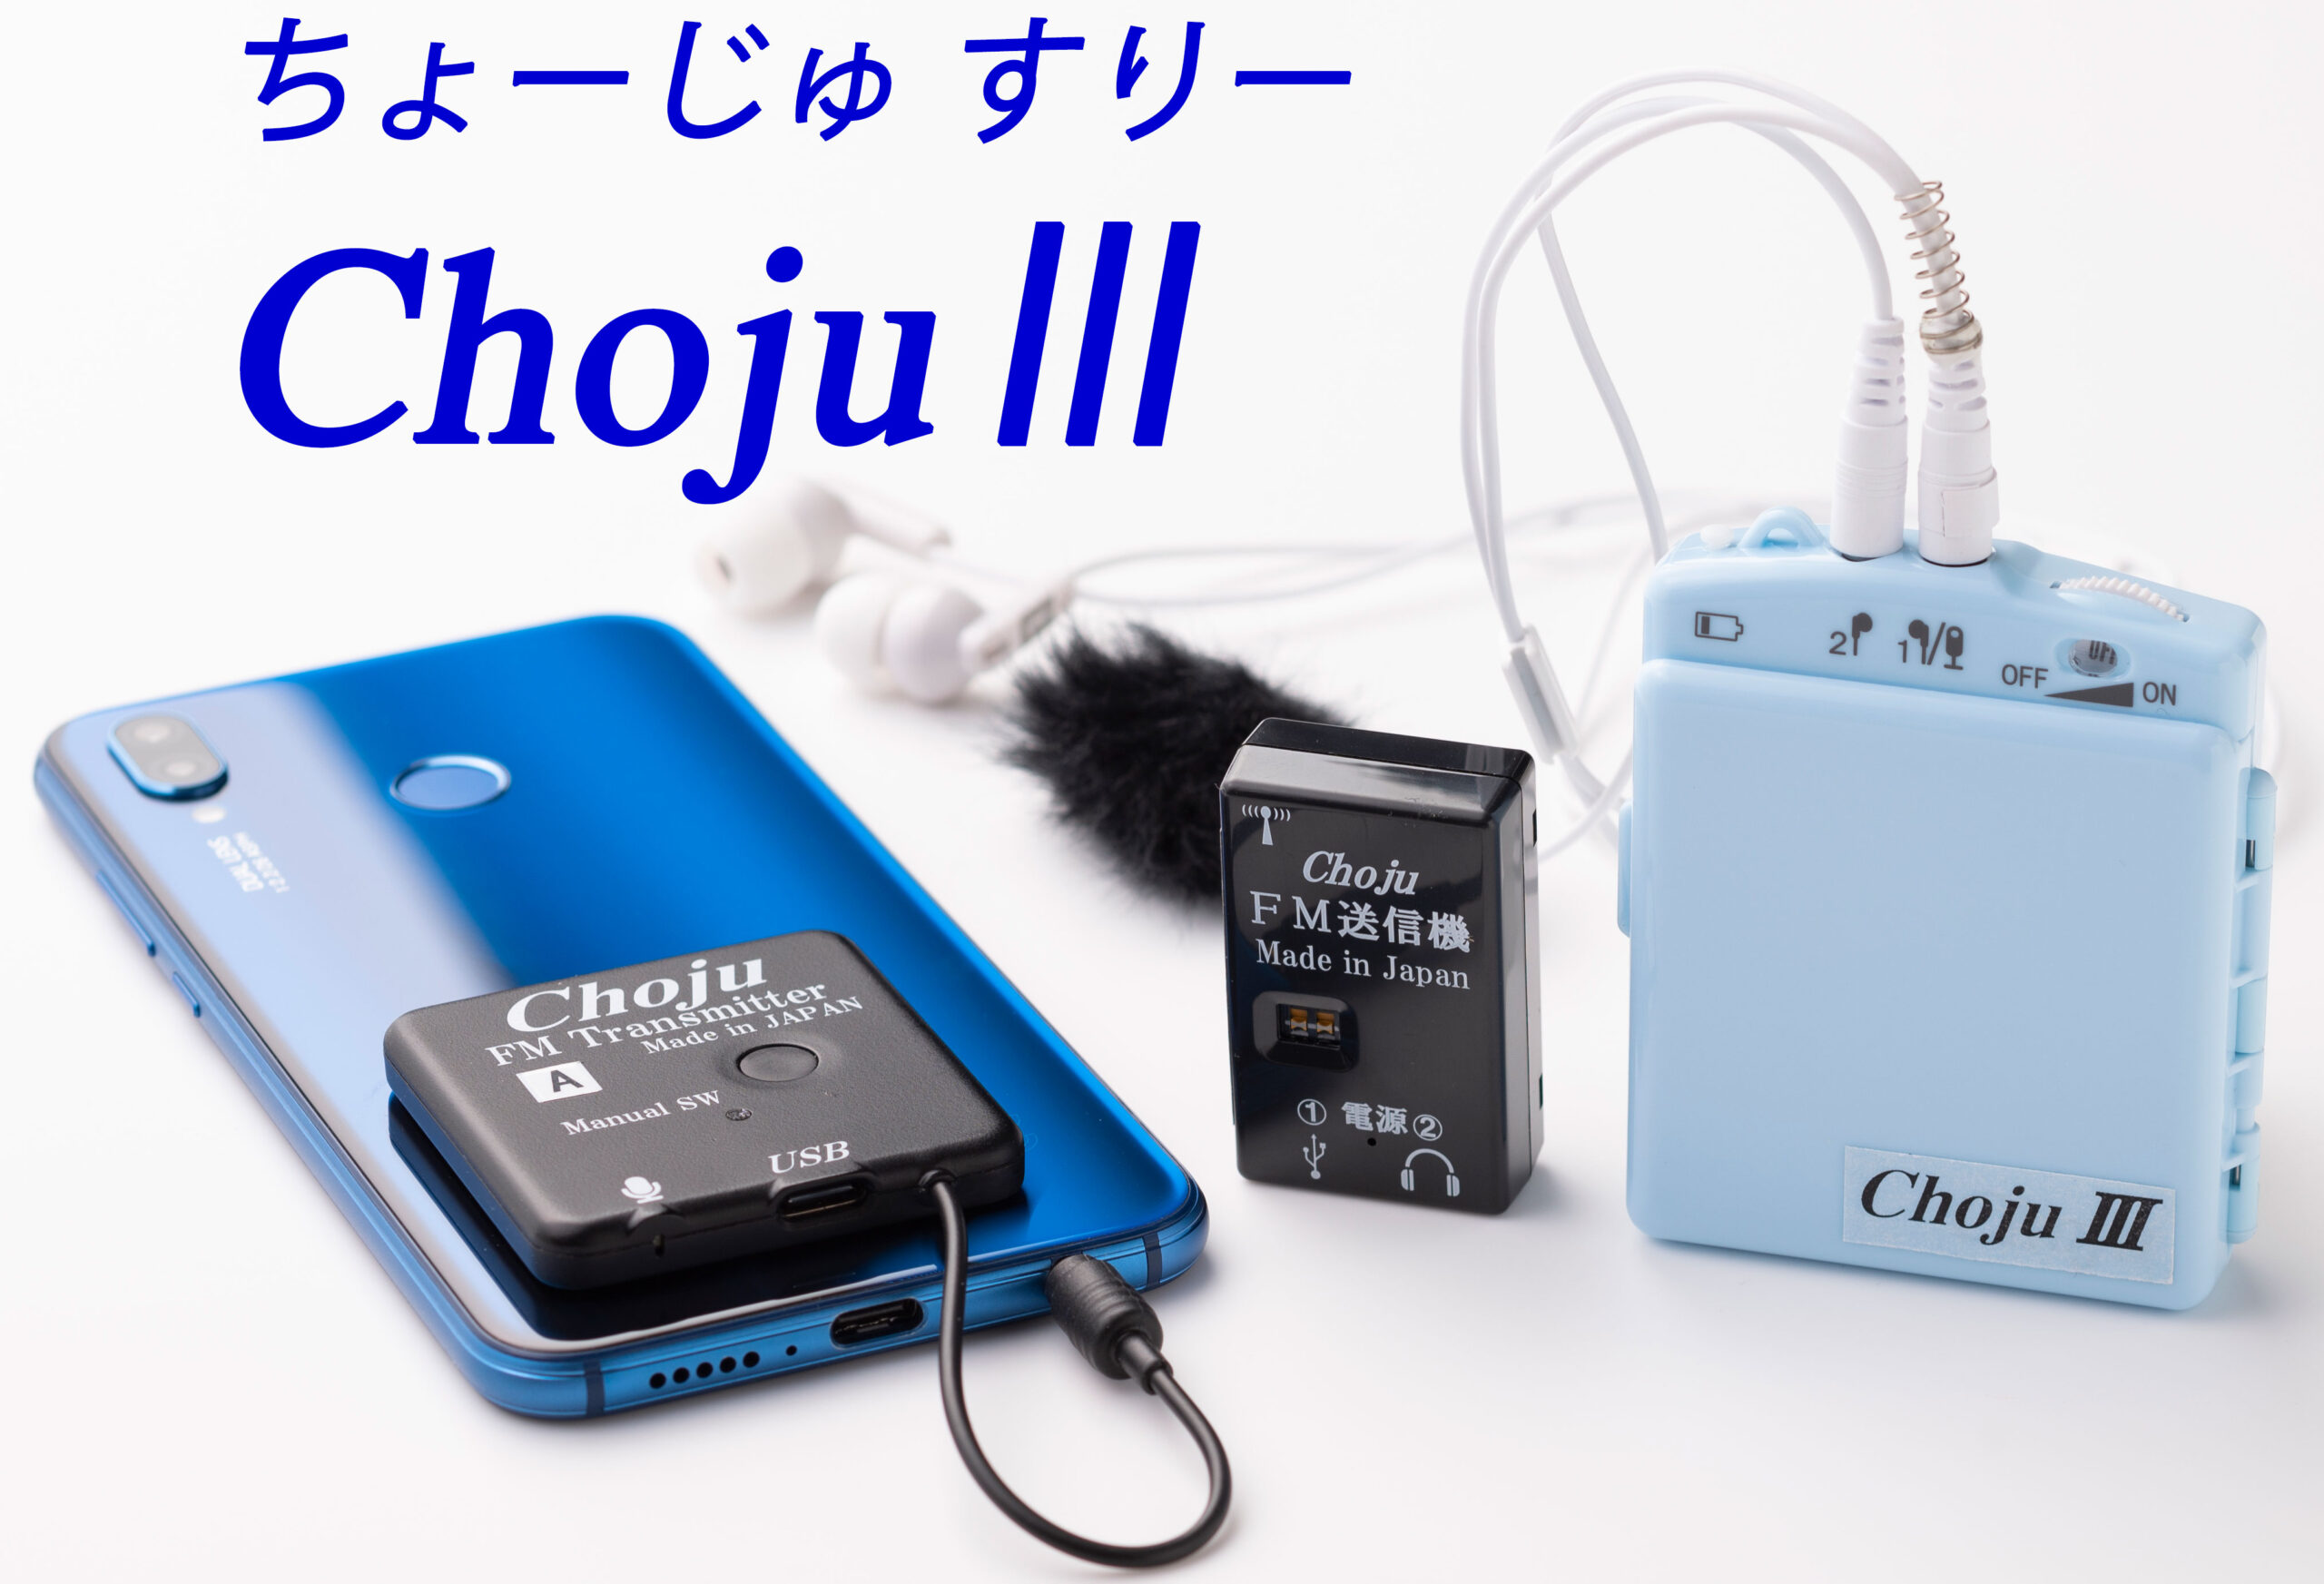 Chojuシリーズのラインアップとオプション品を紹介。 | 購入者8割が 